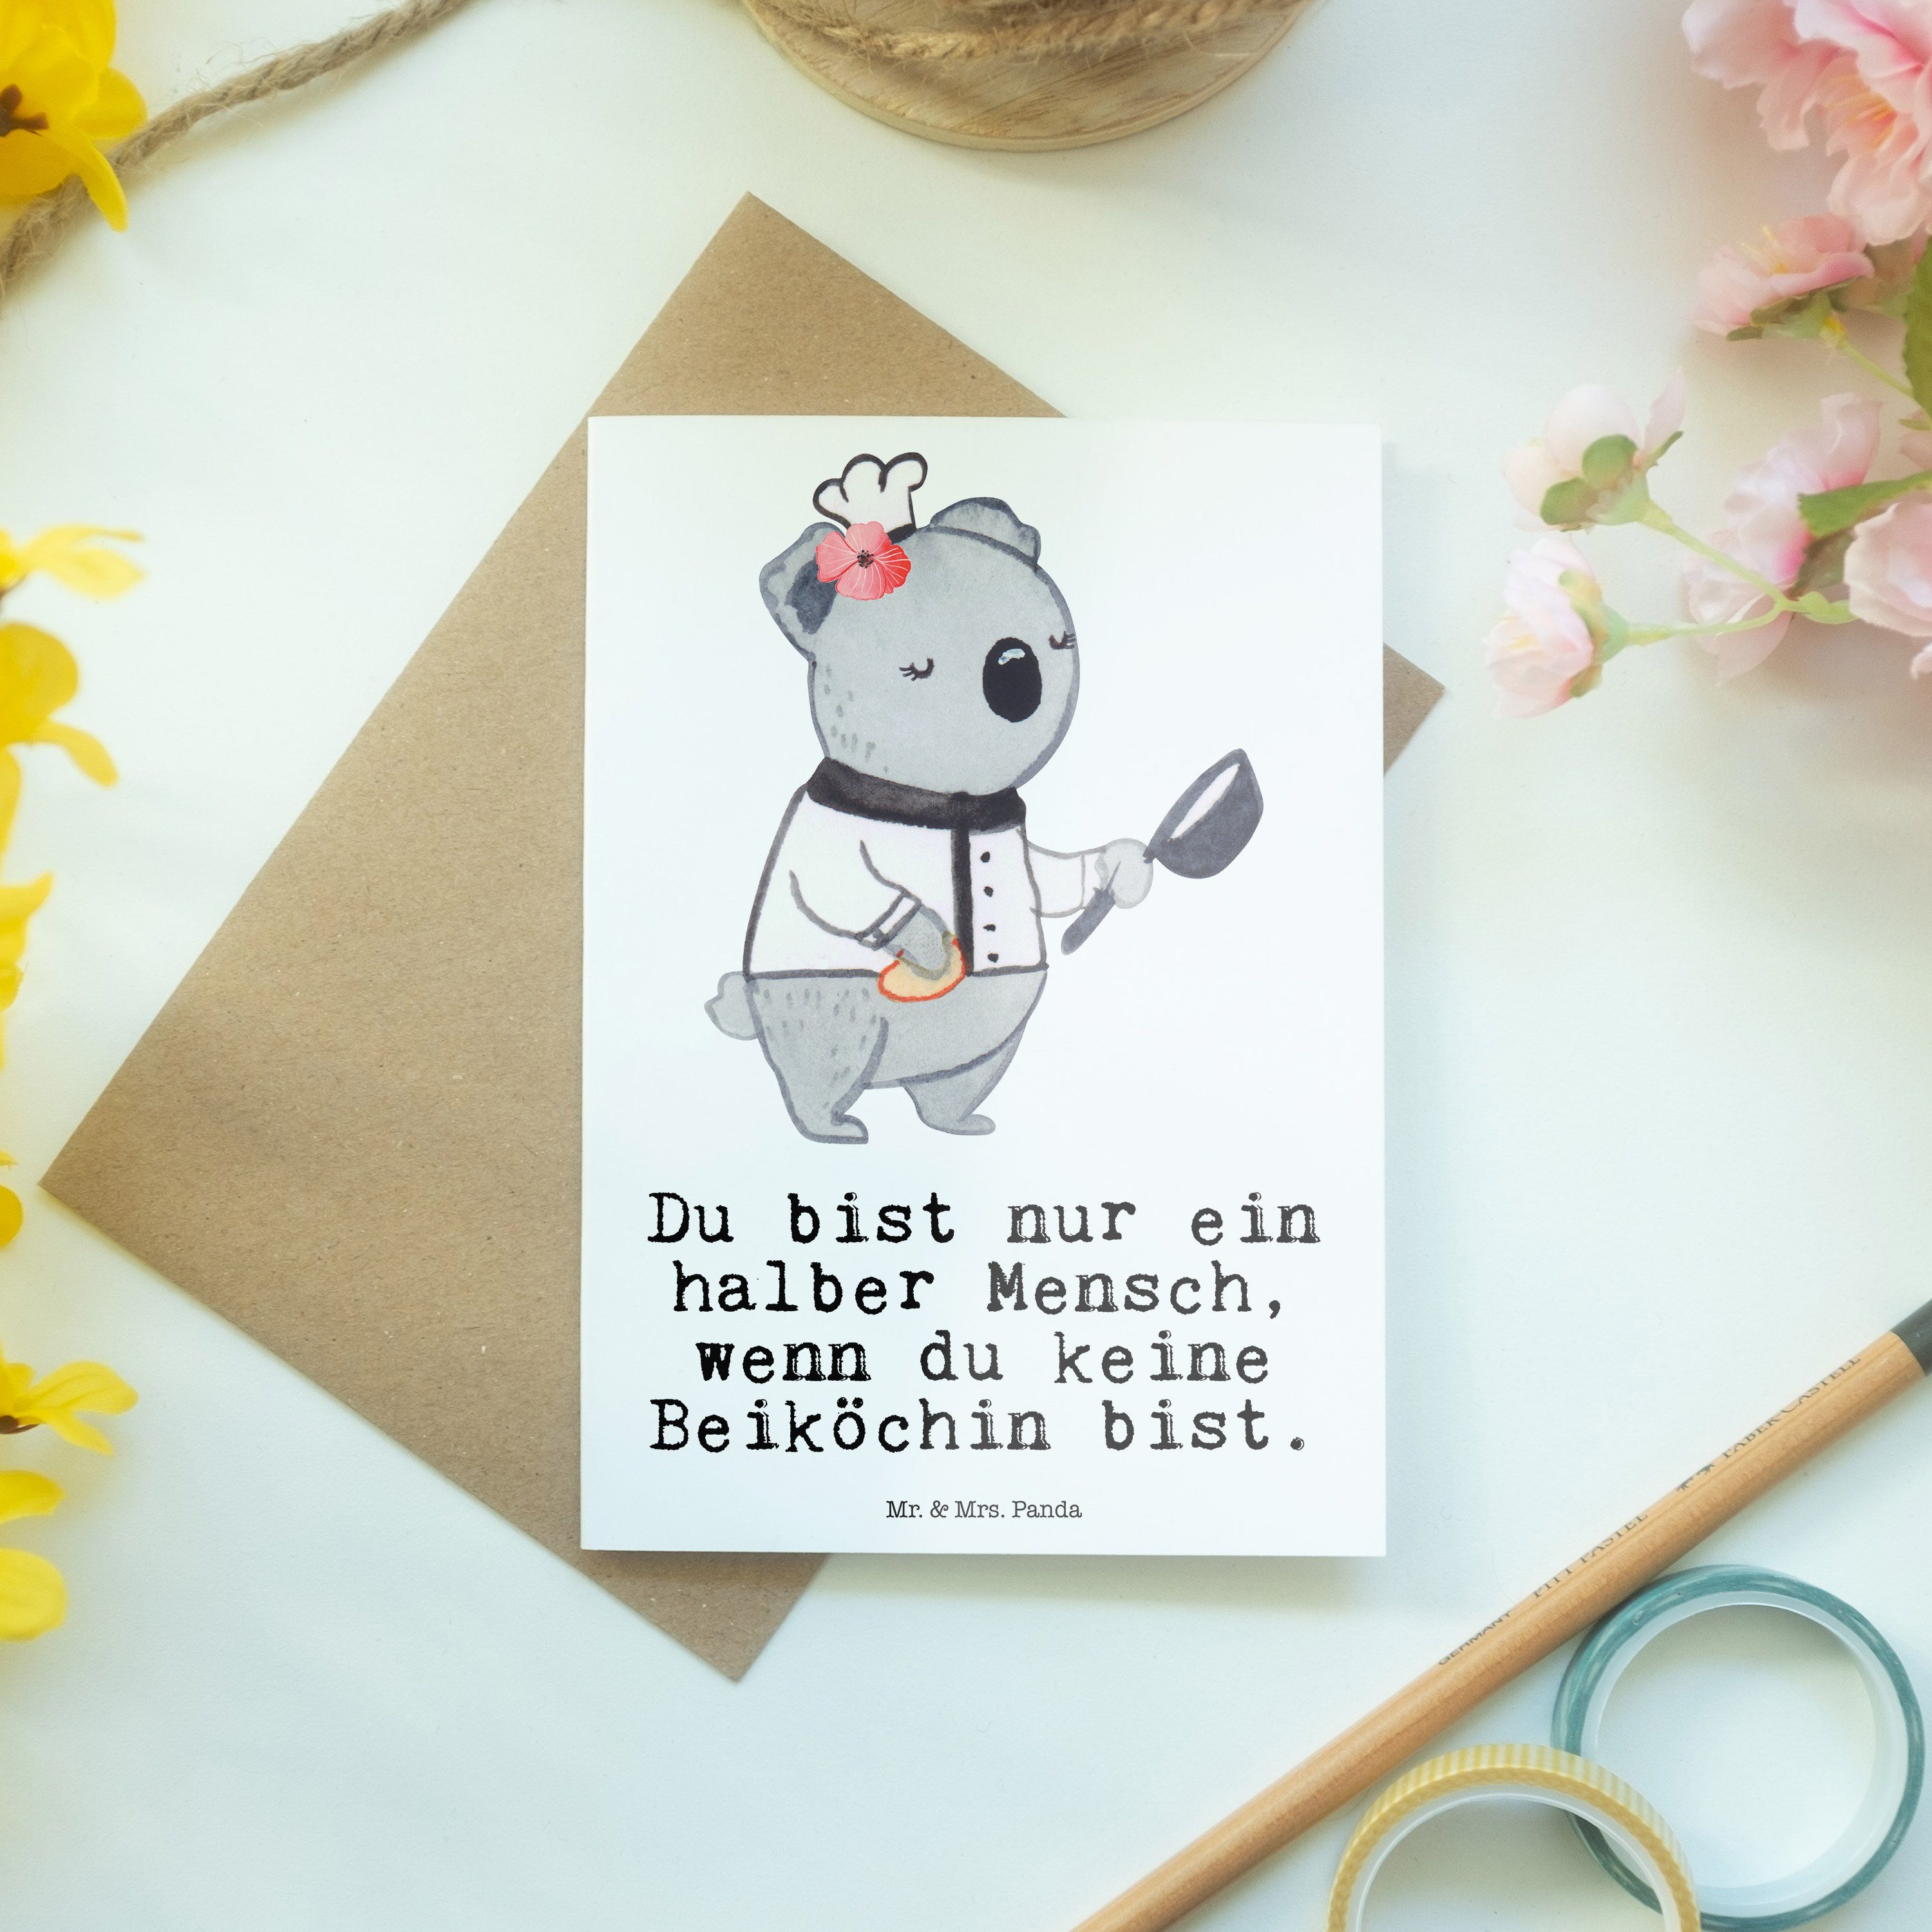 Mr. & Mrs. Panda Grußkarte Beiköchin mit Herz - Weiß - Geschenk, Hochzeitskarte, Jungkoch, Frühs